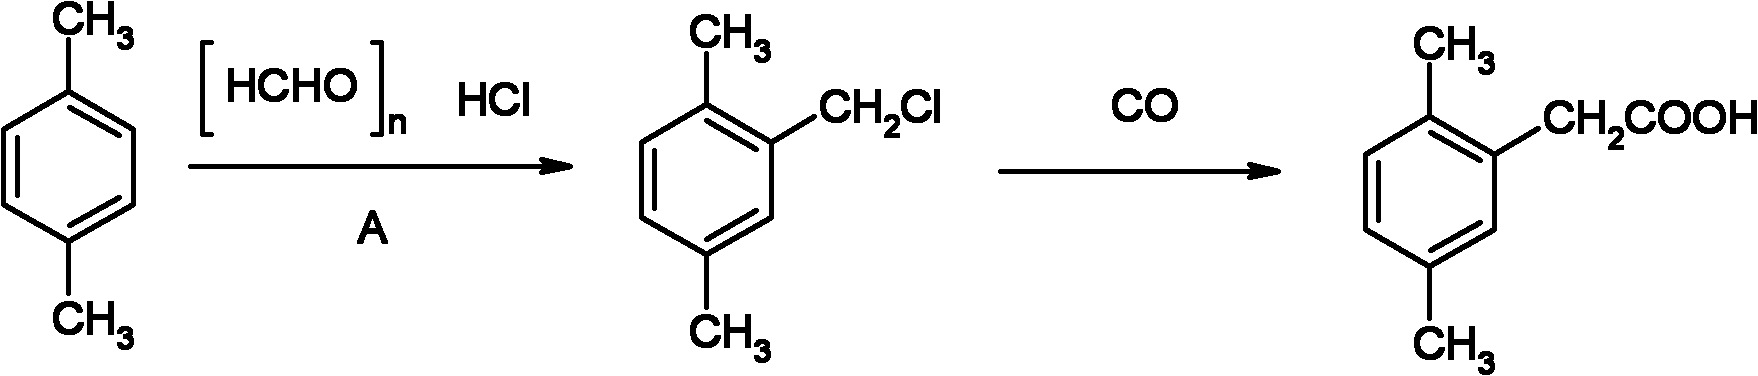 Method for preparing 2,5-dimethyl phenylacetic acid